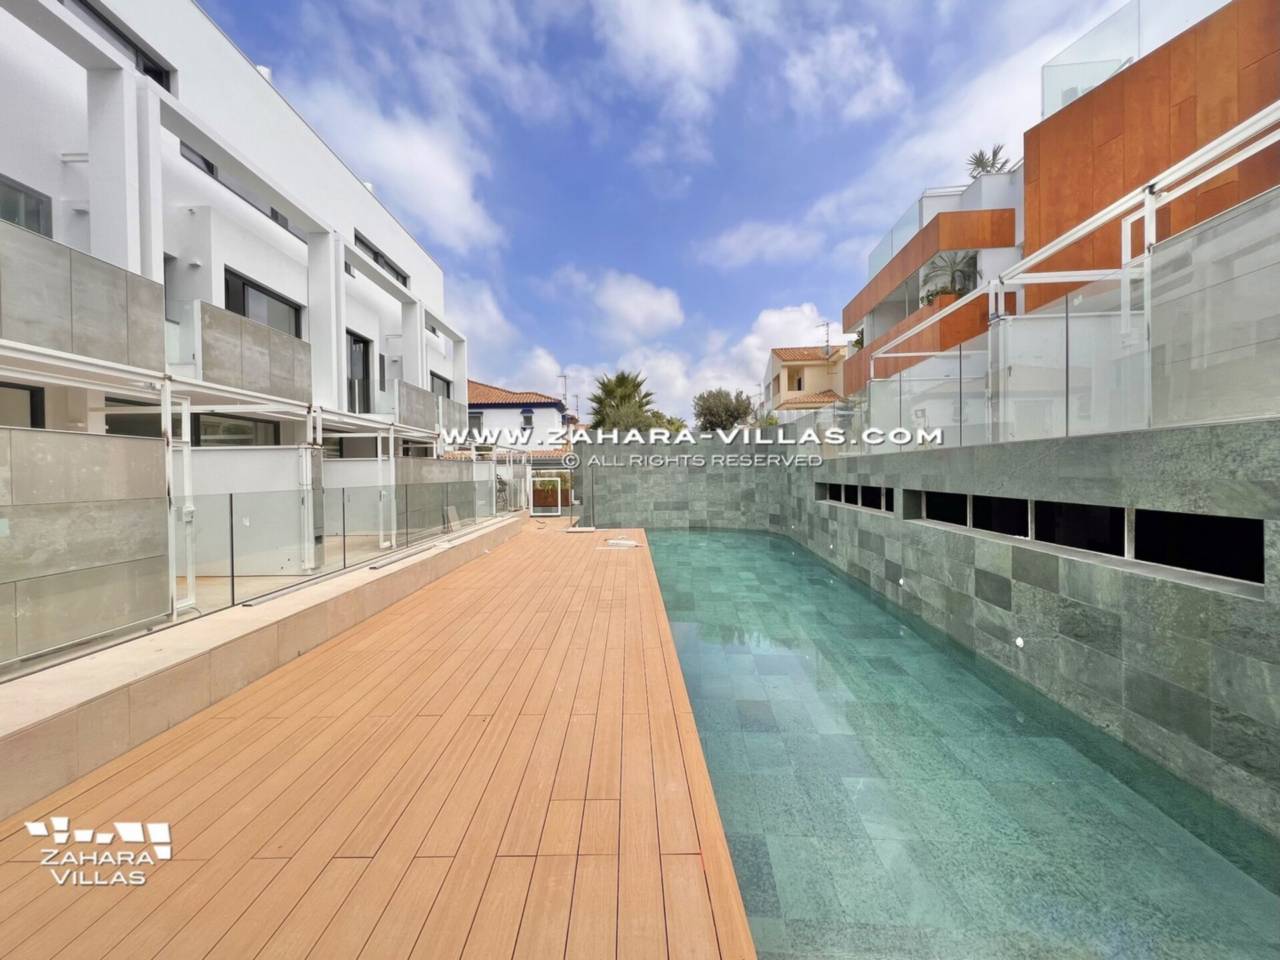 Imagen 2 de Promoción obra nueva terminada "EL OASIS DE ZAHARA" viviendas adosadas junto al mar